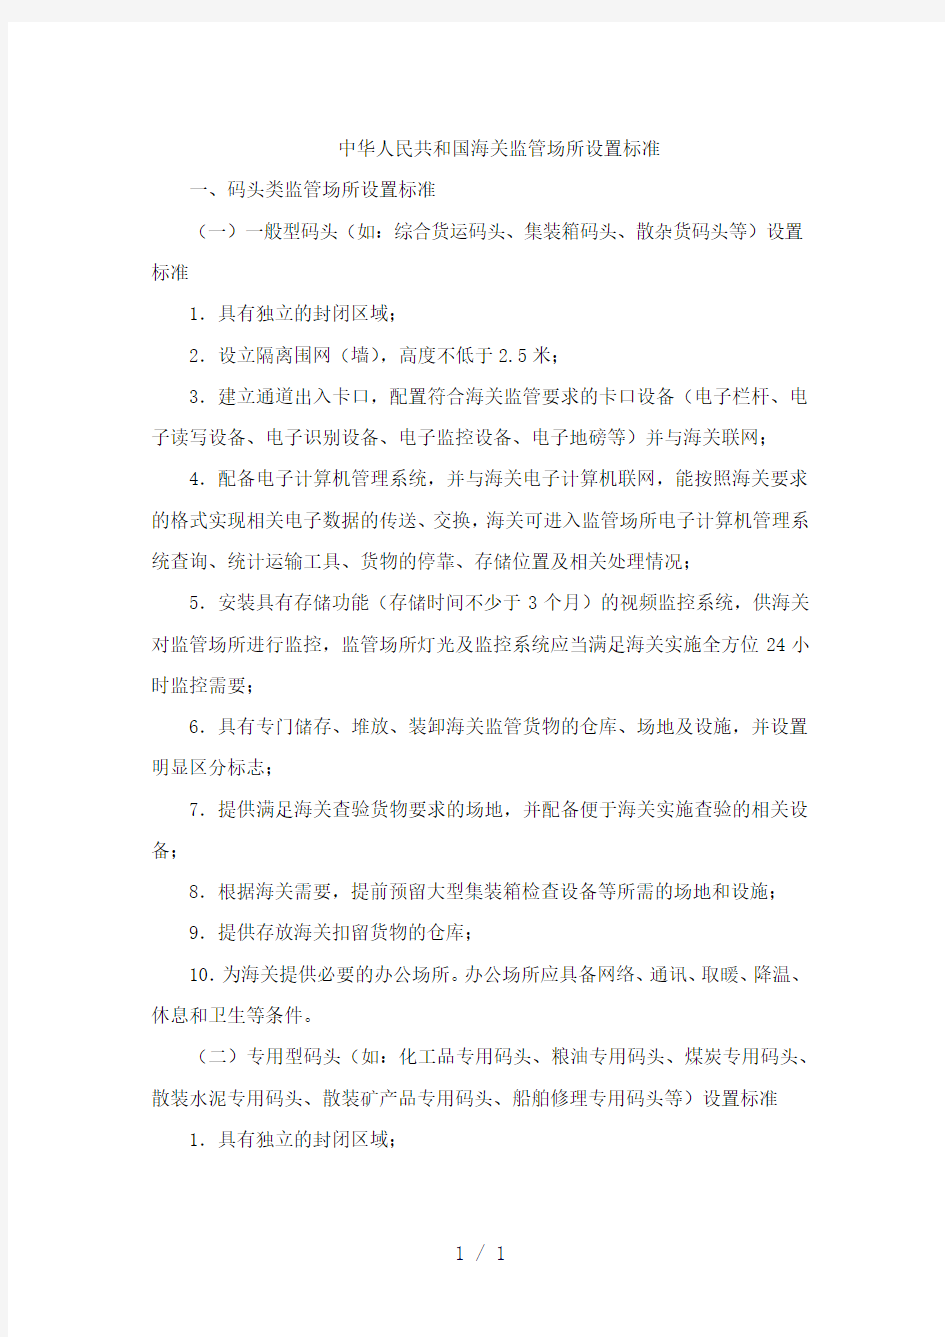 中华人民共和国海关监管场所设置标准